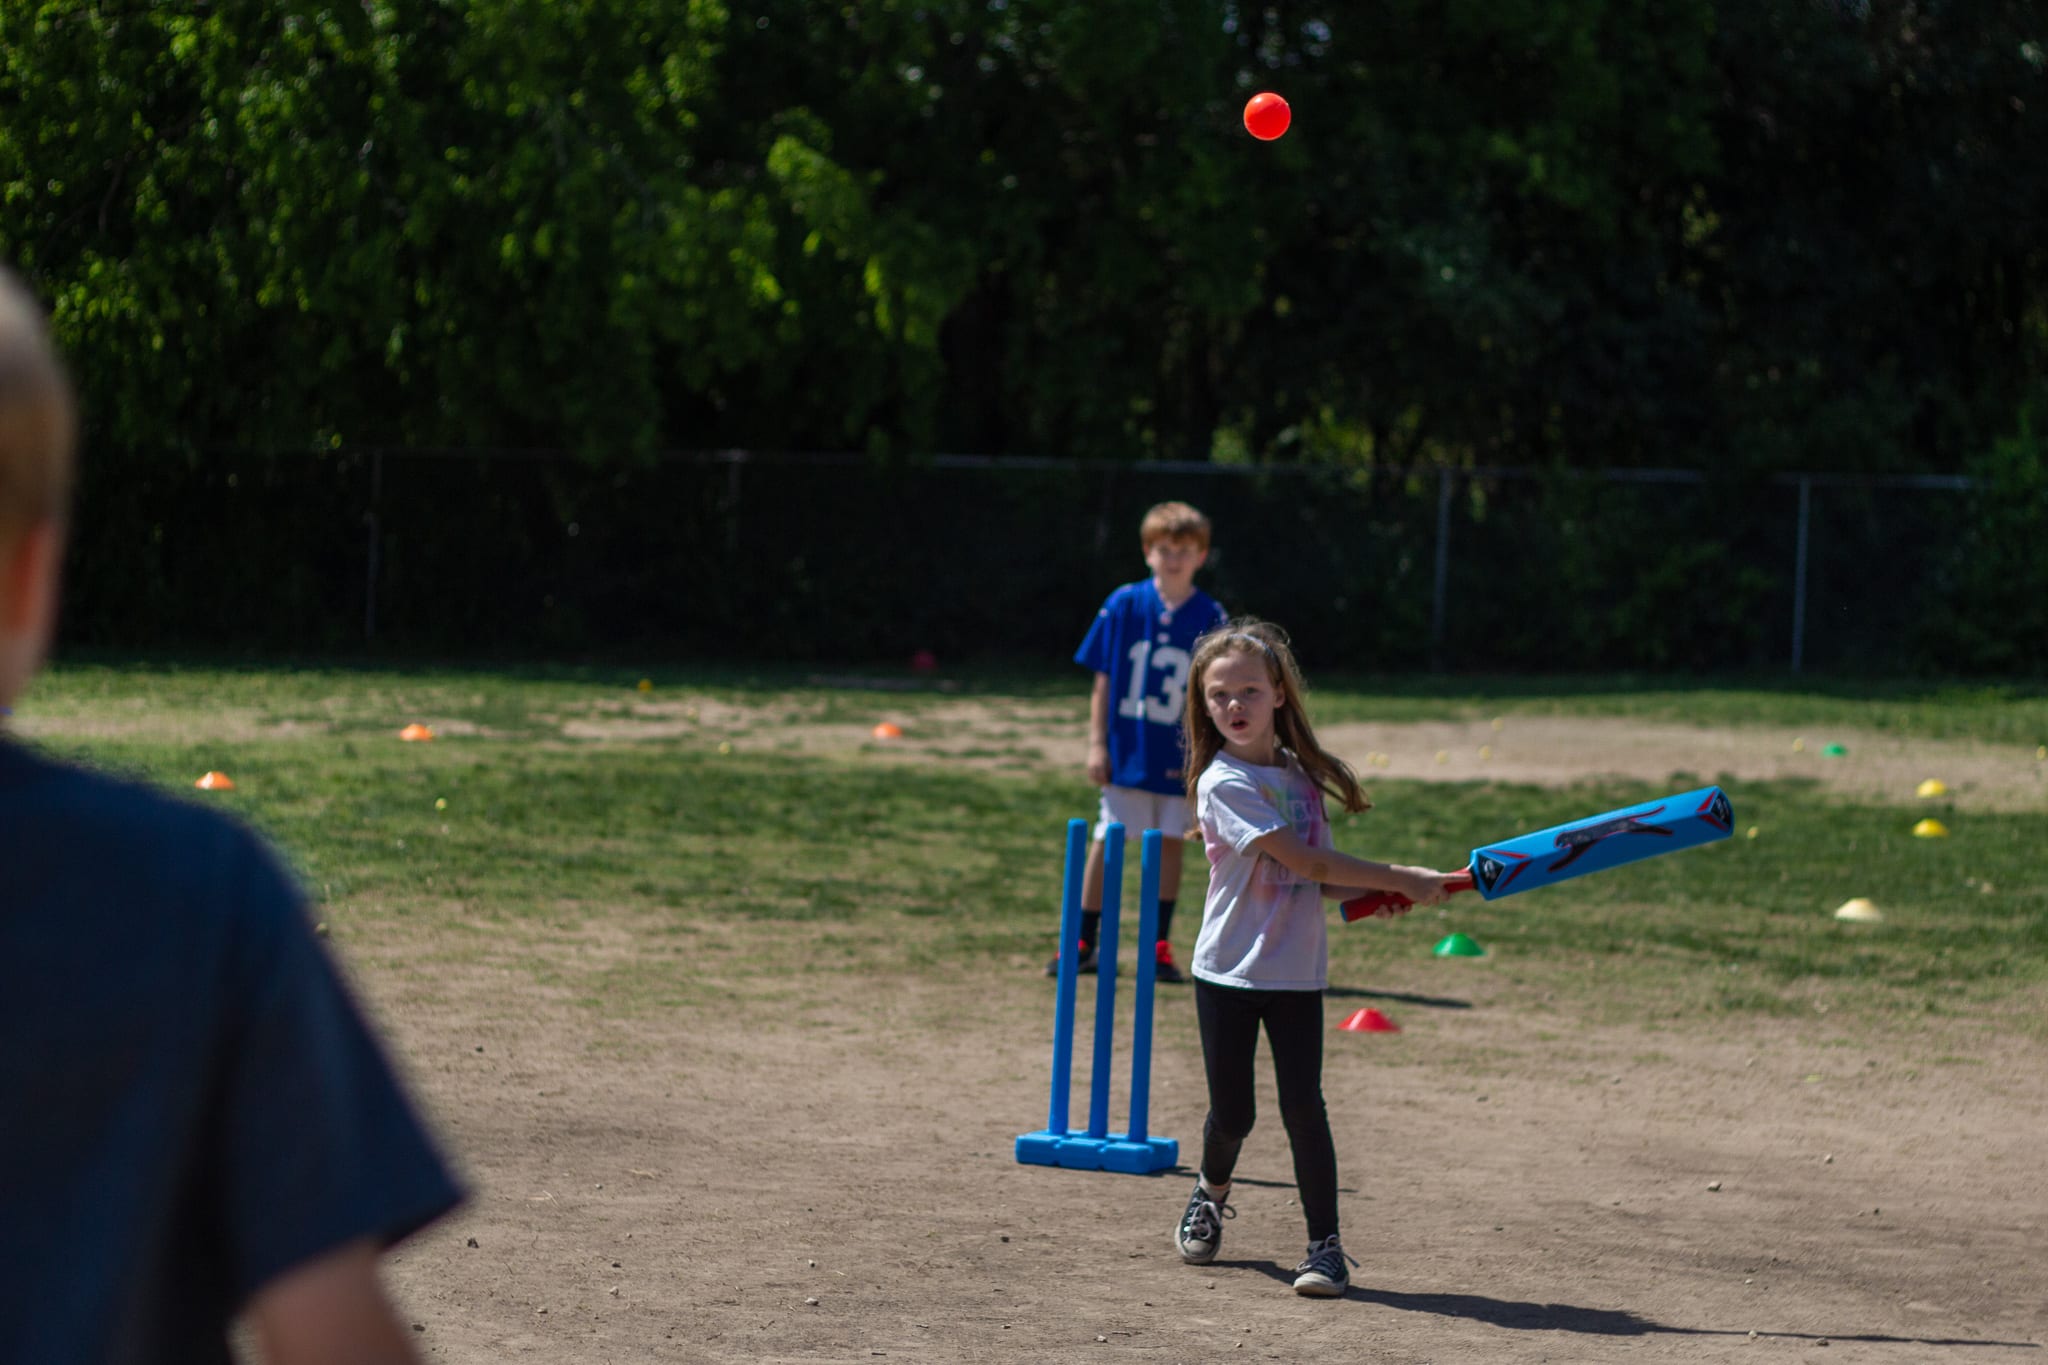 little girl batting cricket ball